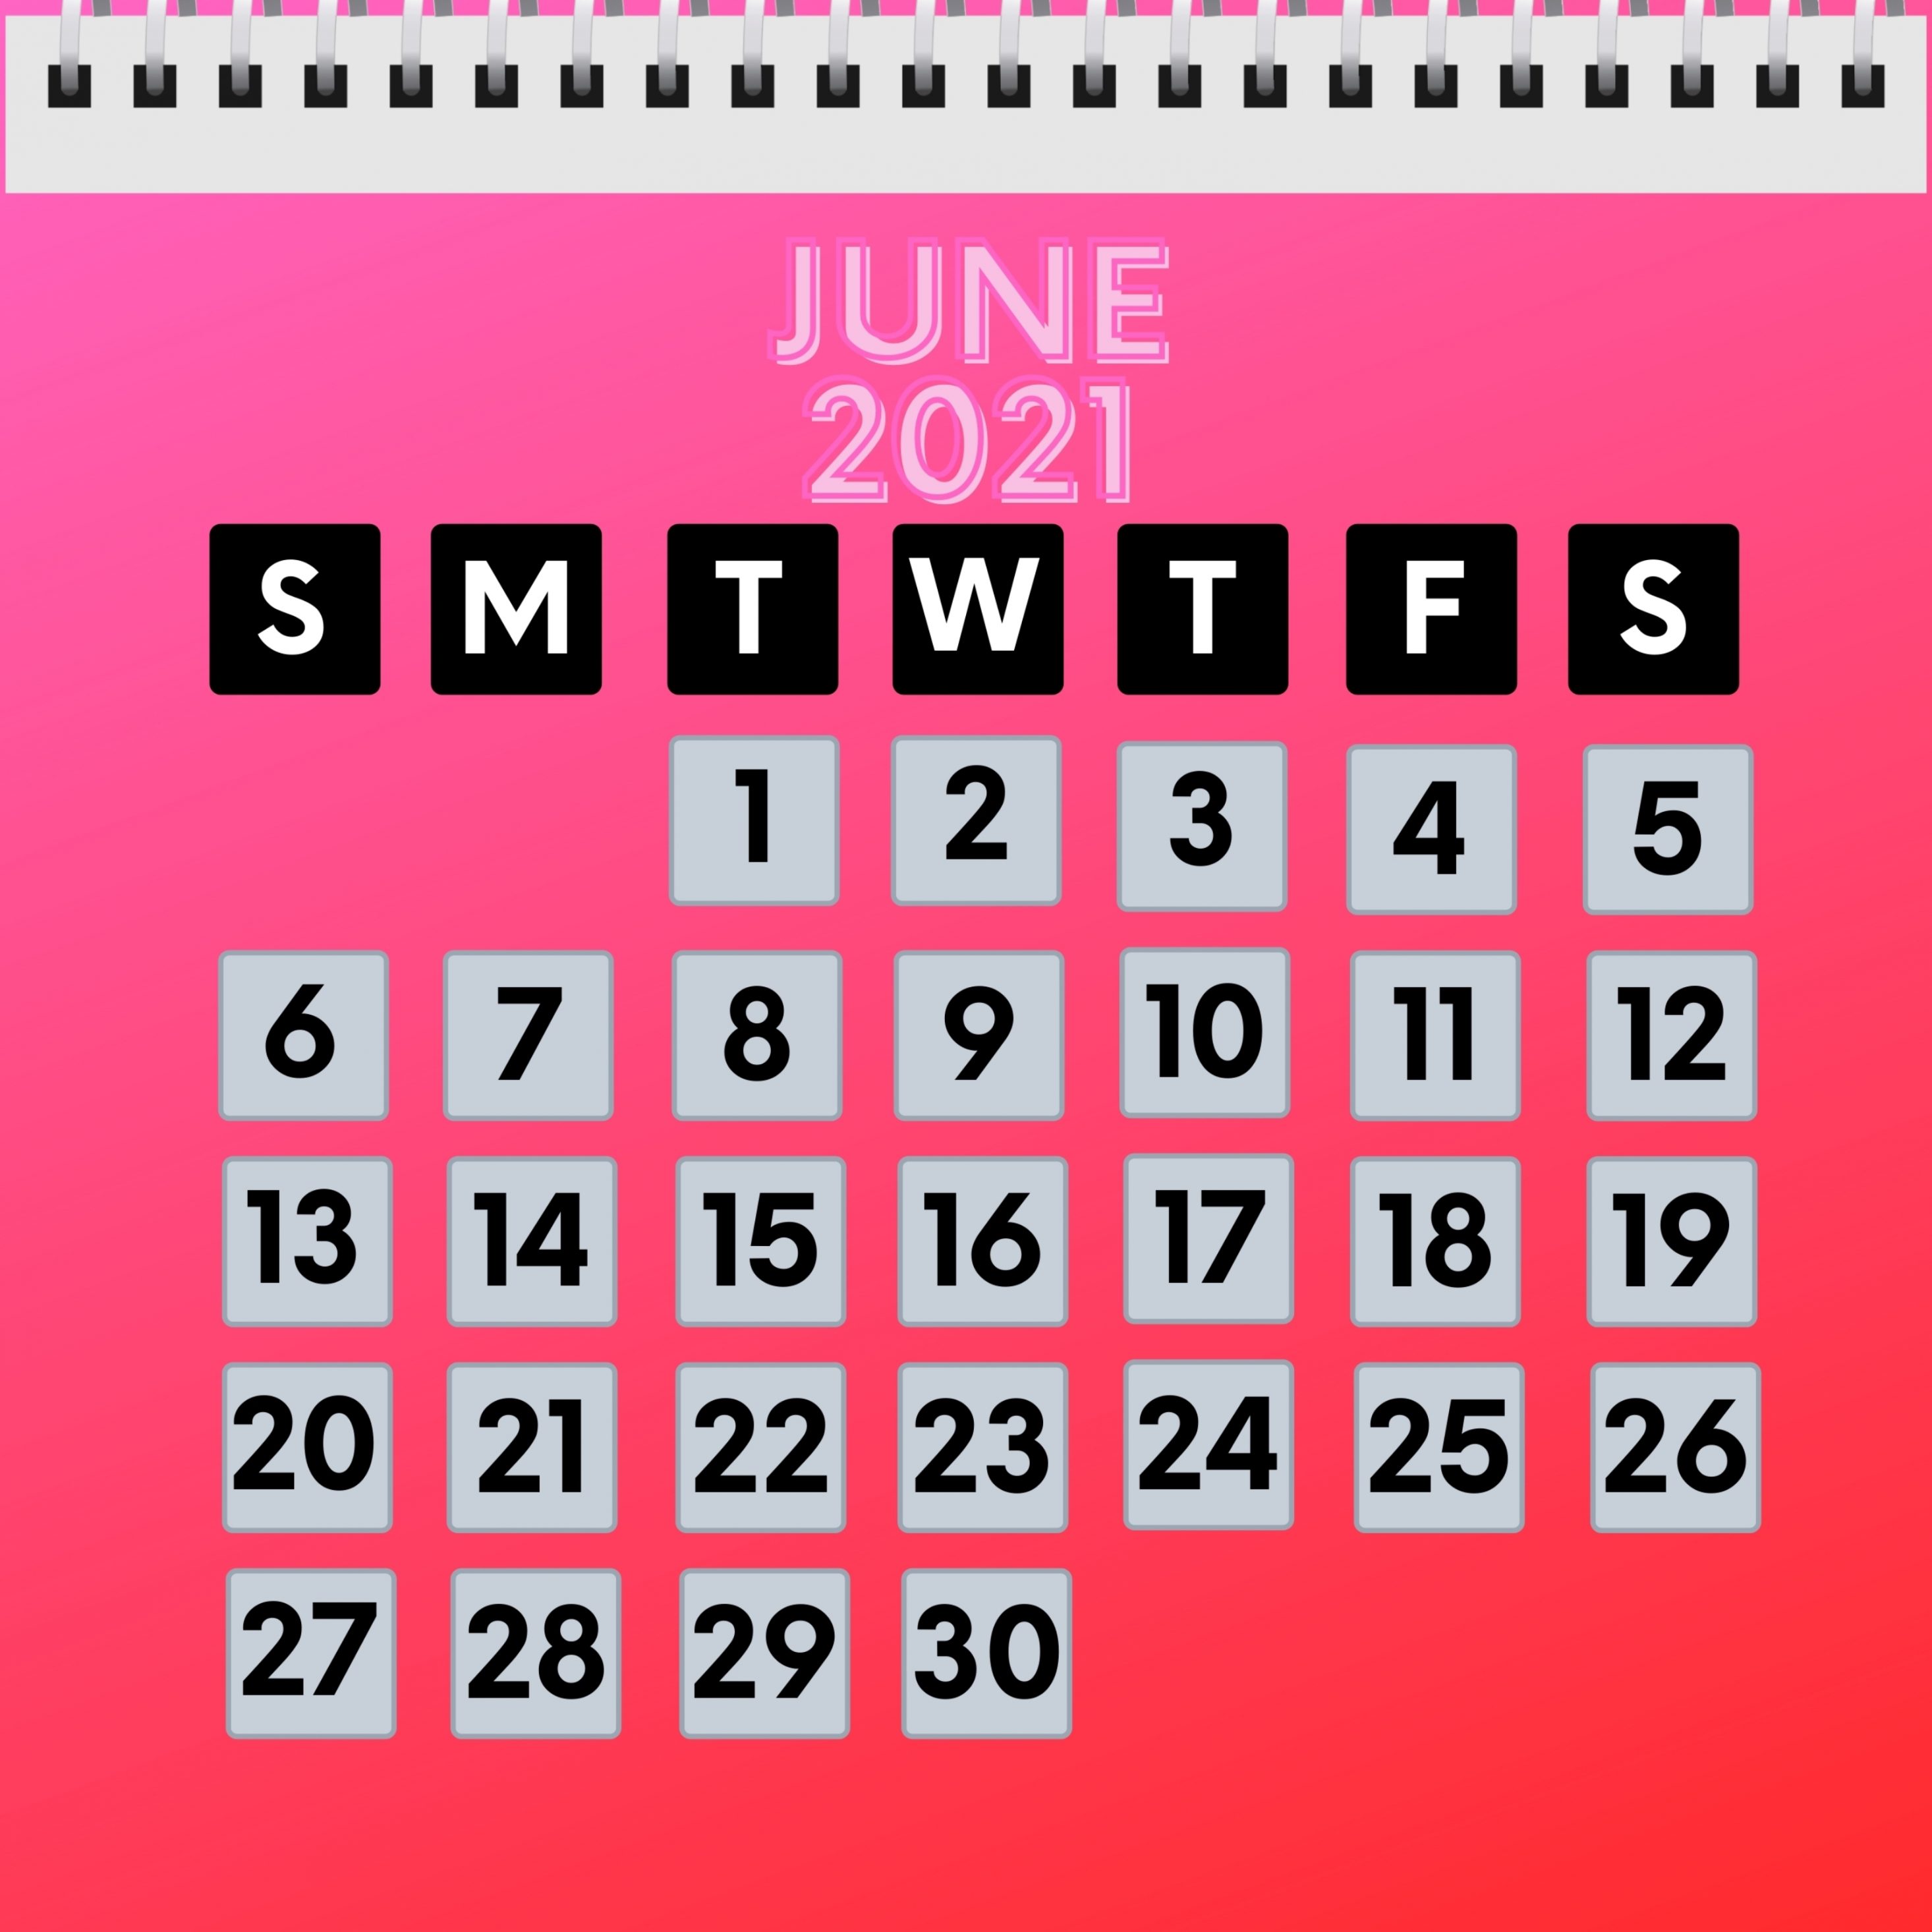 2932x2932 iPad Pro wallpaper 4k June 2021 Calendar iPad Wallpaper 2932x2932 pixels resolution